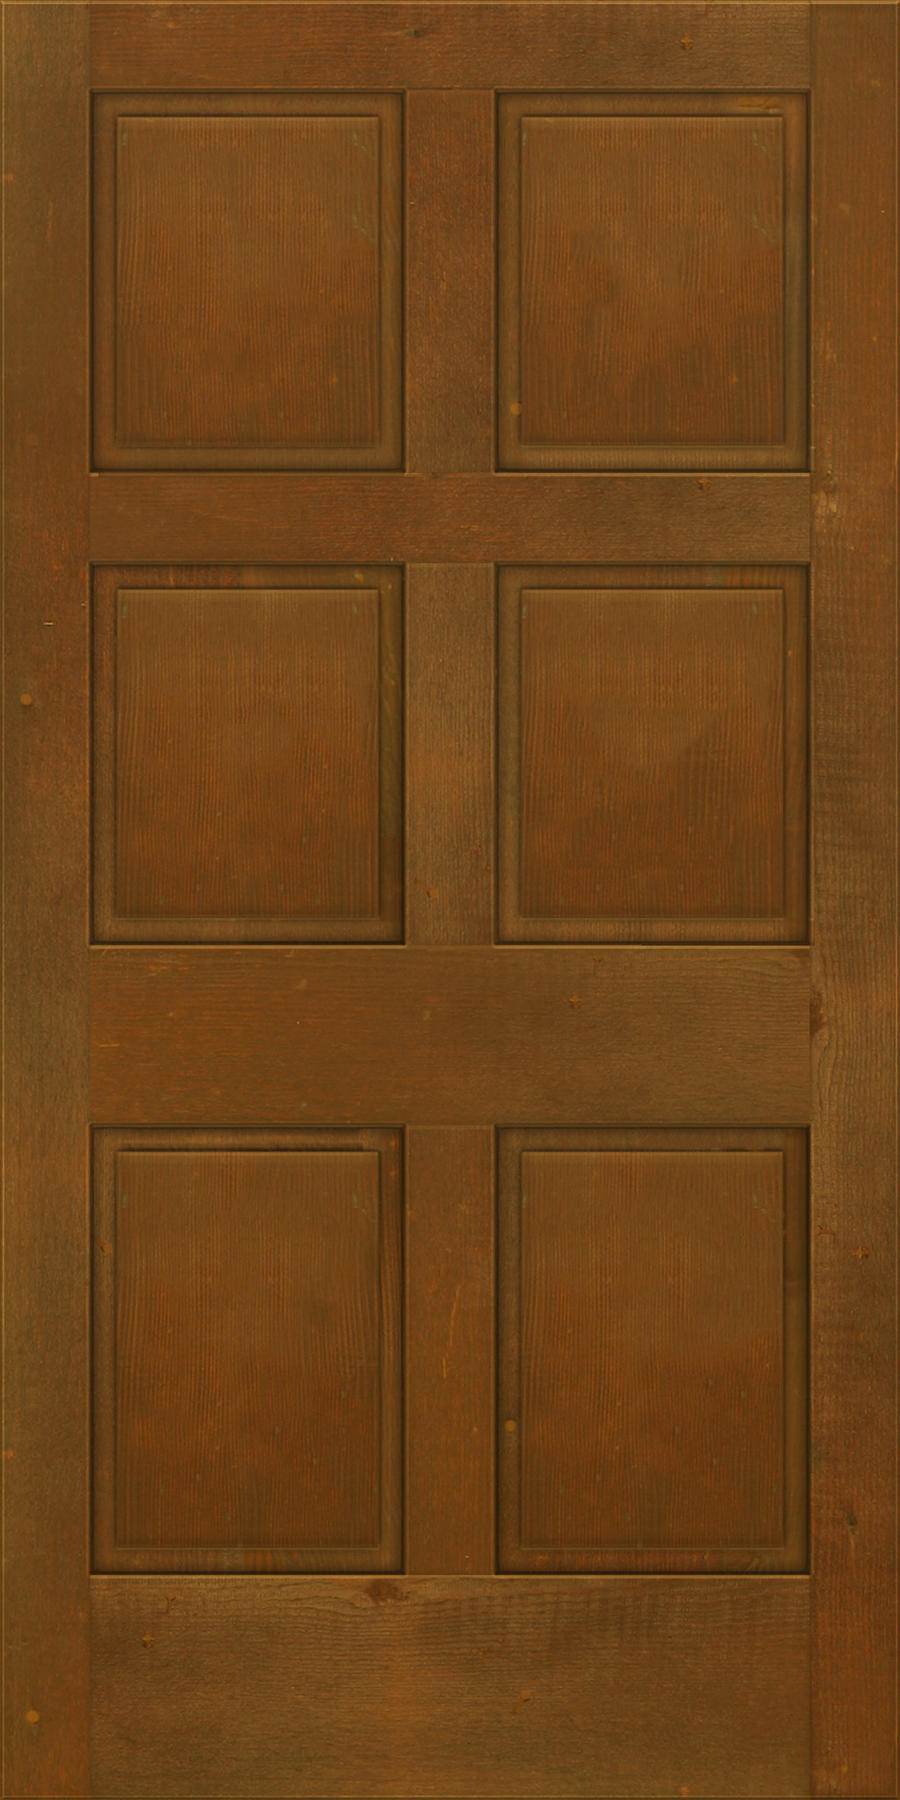 door texture by AncientOrange on DeviantArt